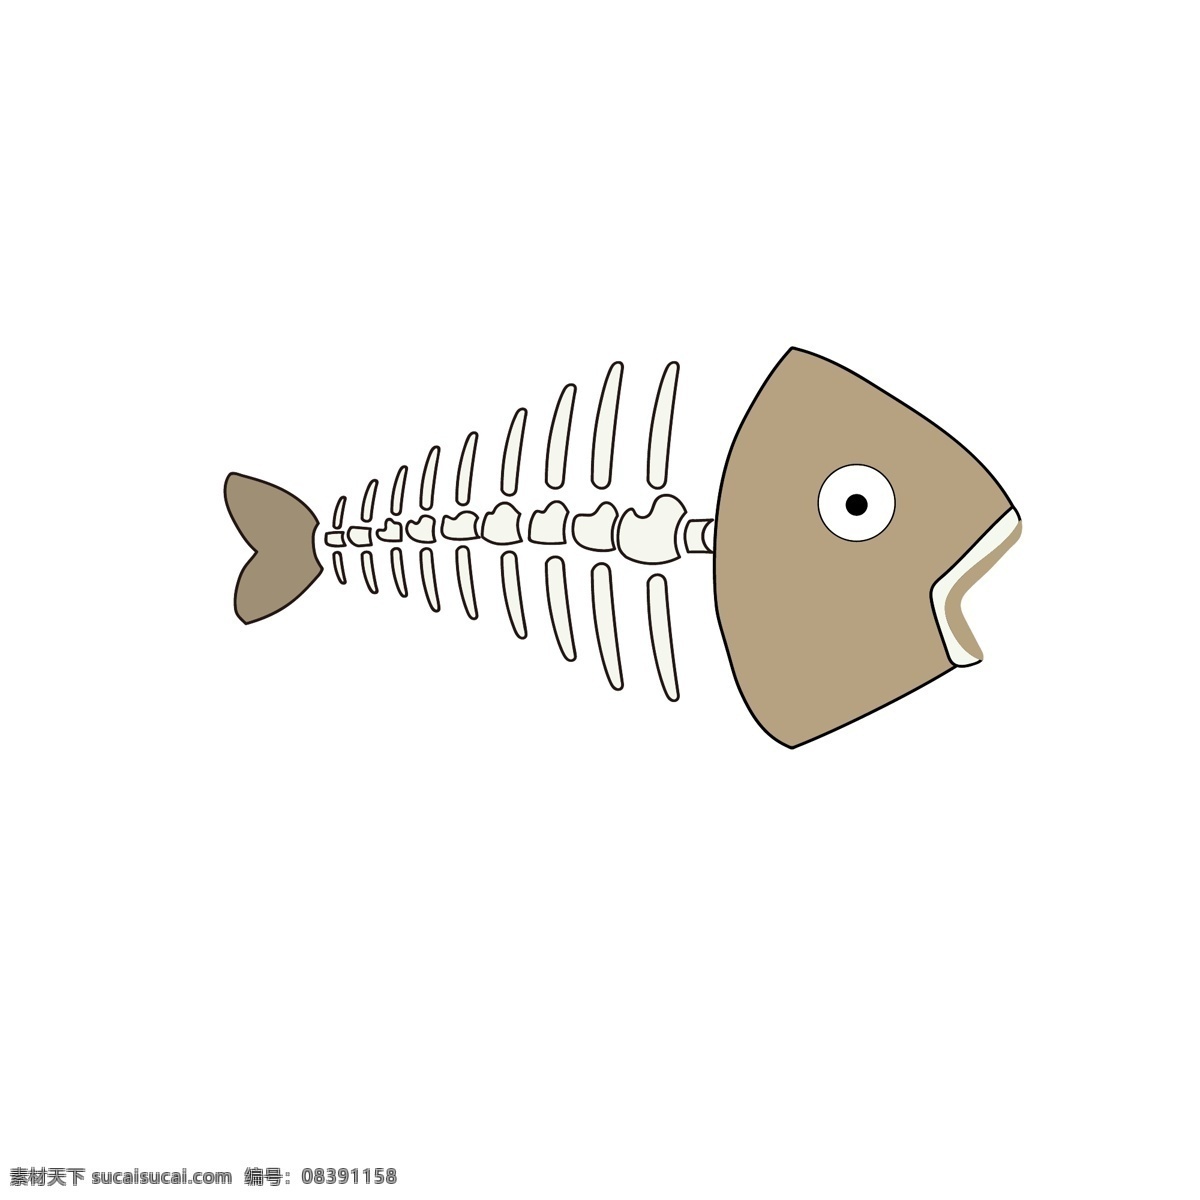 卡通鱼骨头 卡通 动物 鱼 鱼骨头 鱼骨 结构 卡通设计